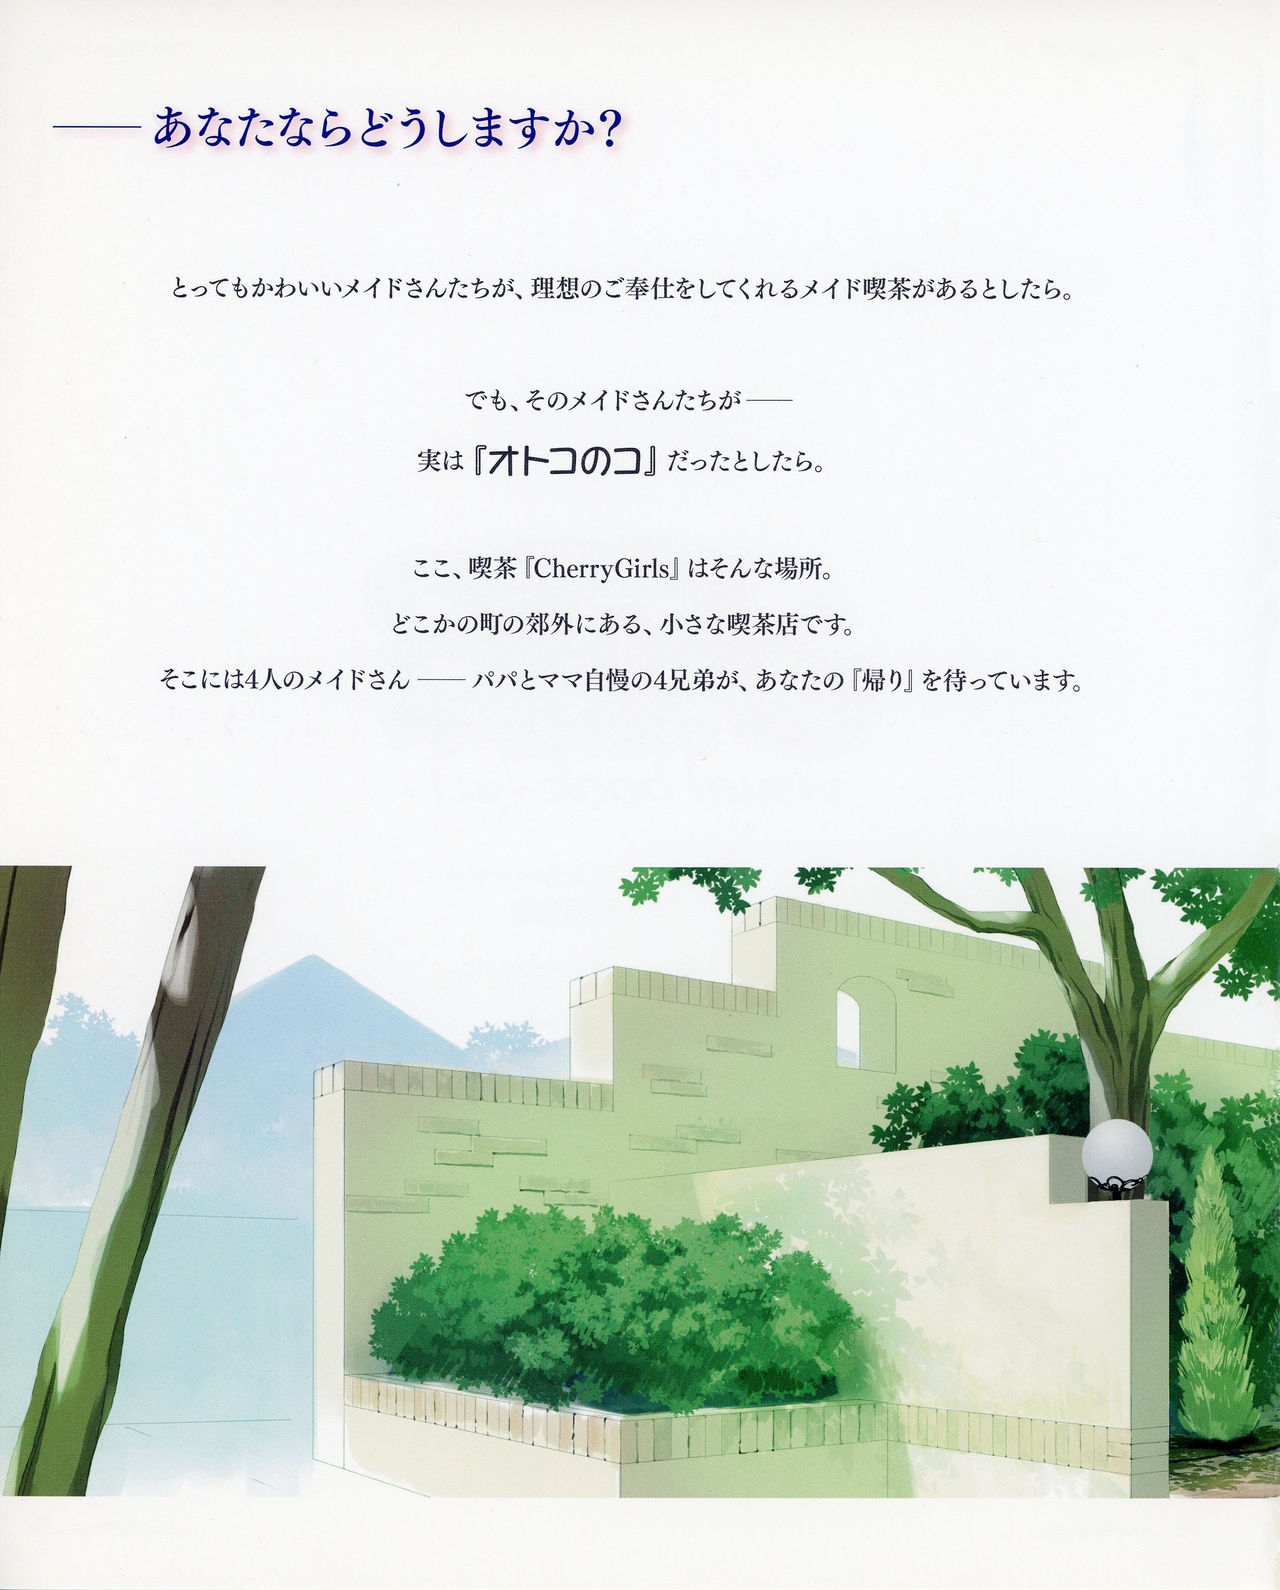 [Kasukabe Akira] Otokonoko wa Maid Fuku ga Osuki!? visual book vol. 1 (Otokonoko wa Maid Fuku ga Osuki!?) 4